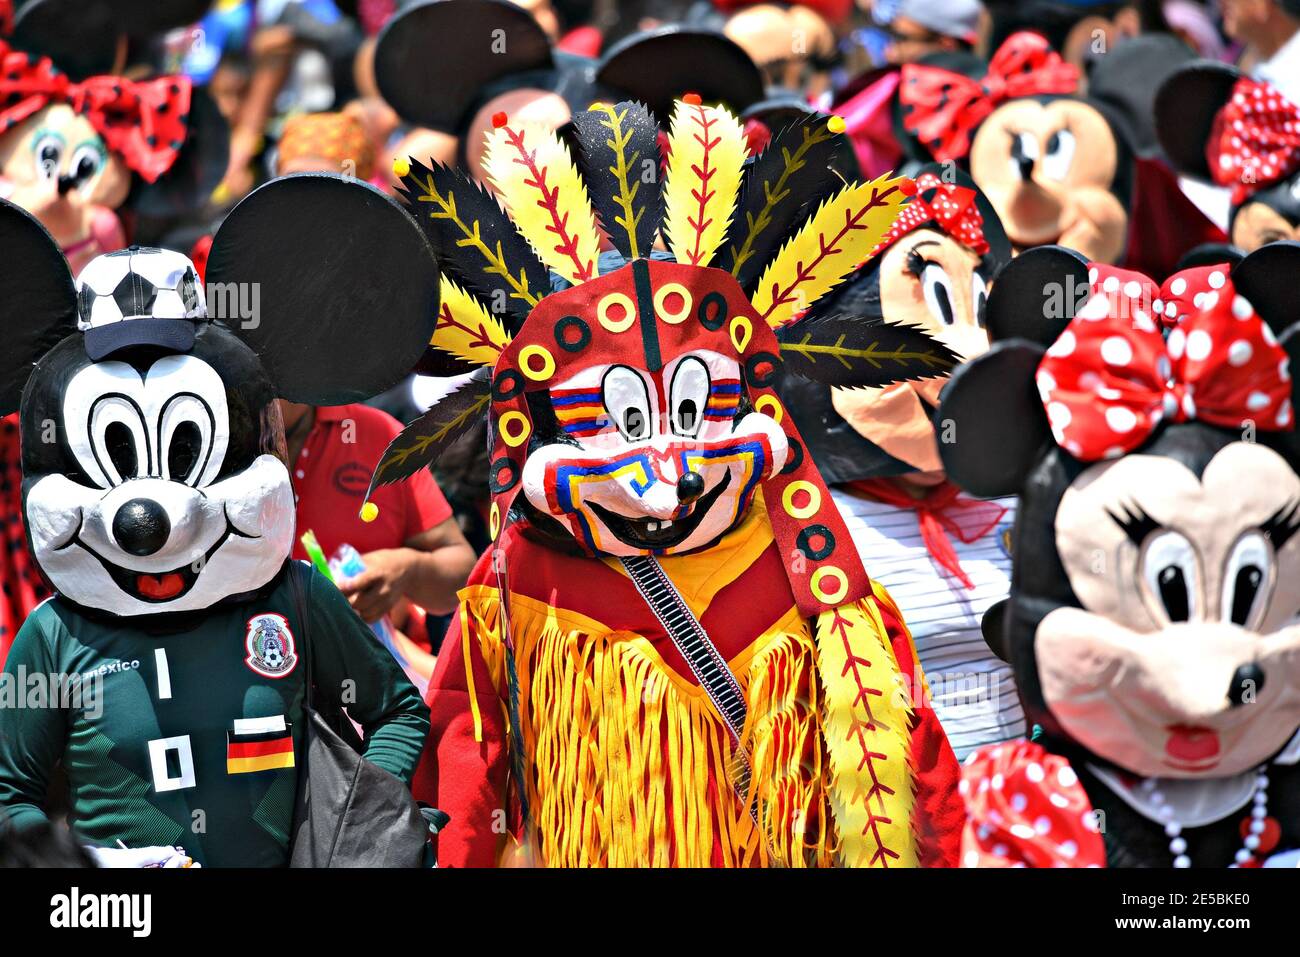 Local people with colorful masks and costumes participating at the parade of Día de los locos in San Miguel de Allende, Guanajuato Mexico. Stock Photo